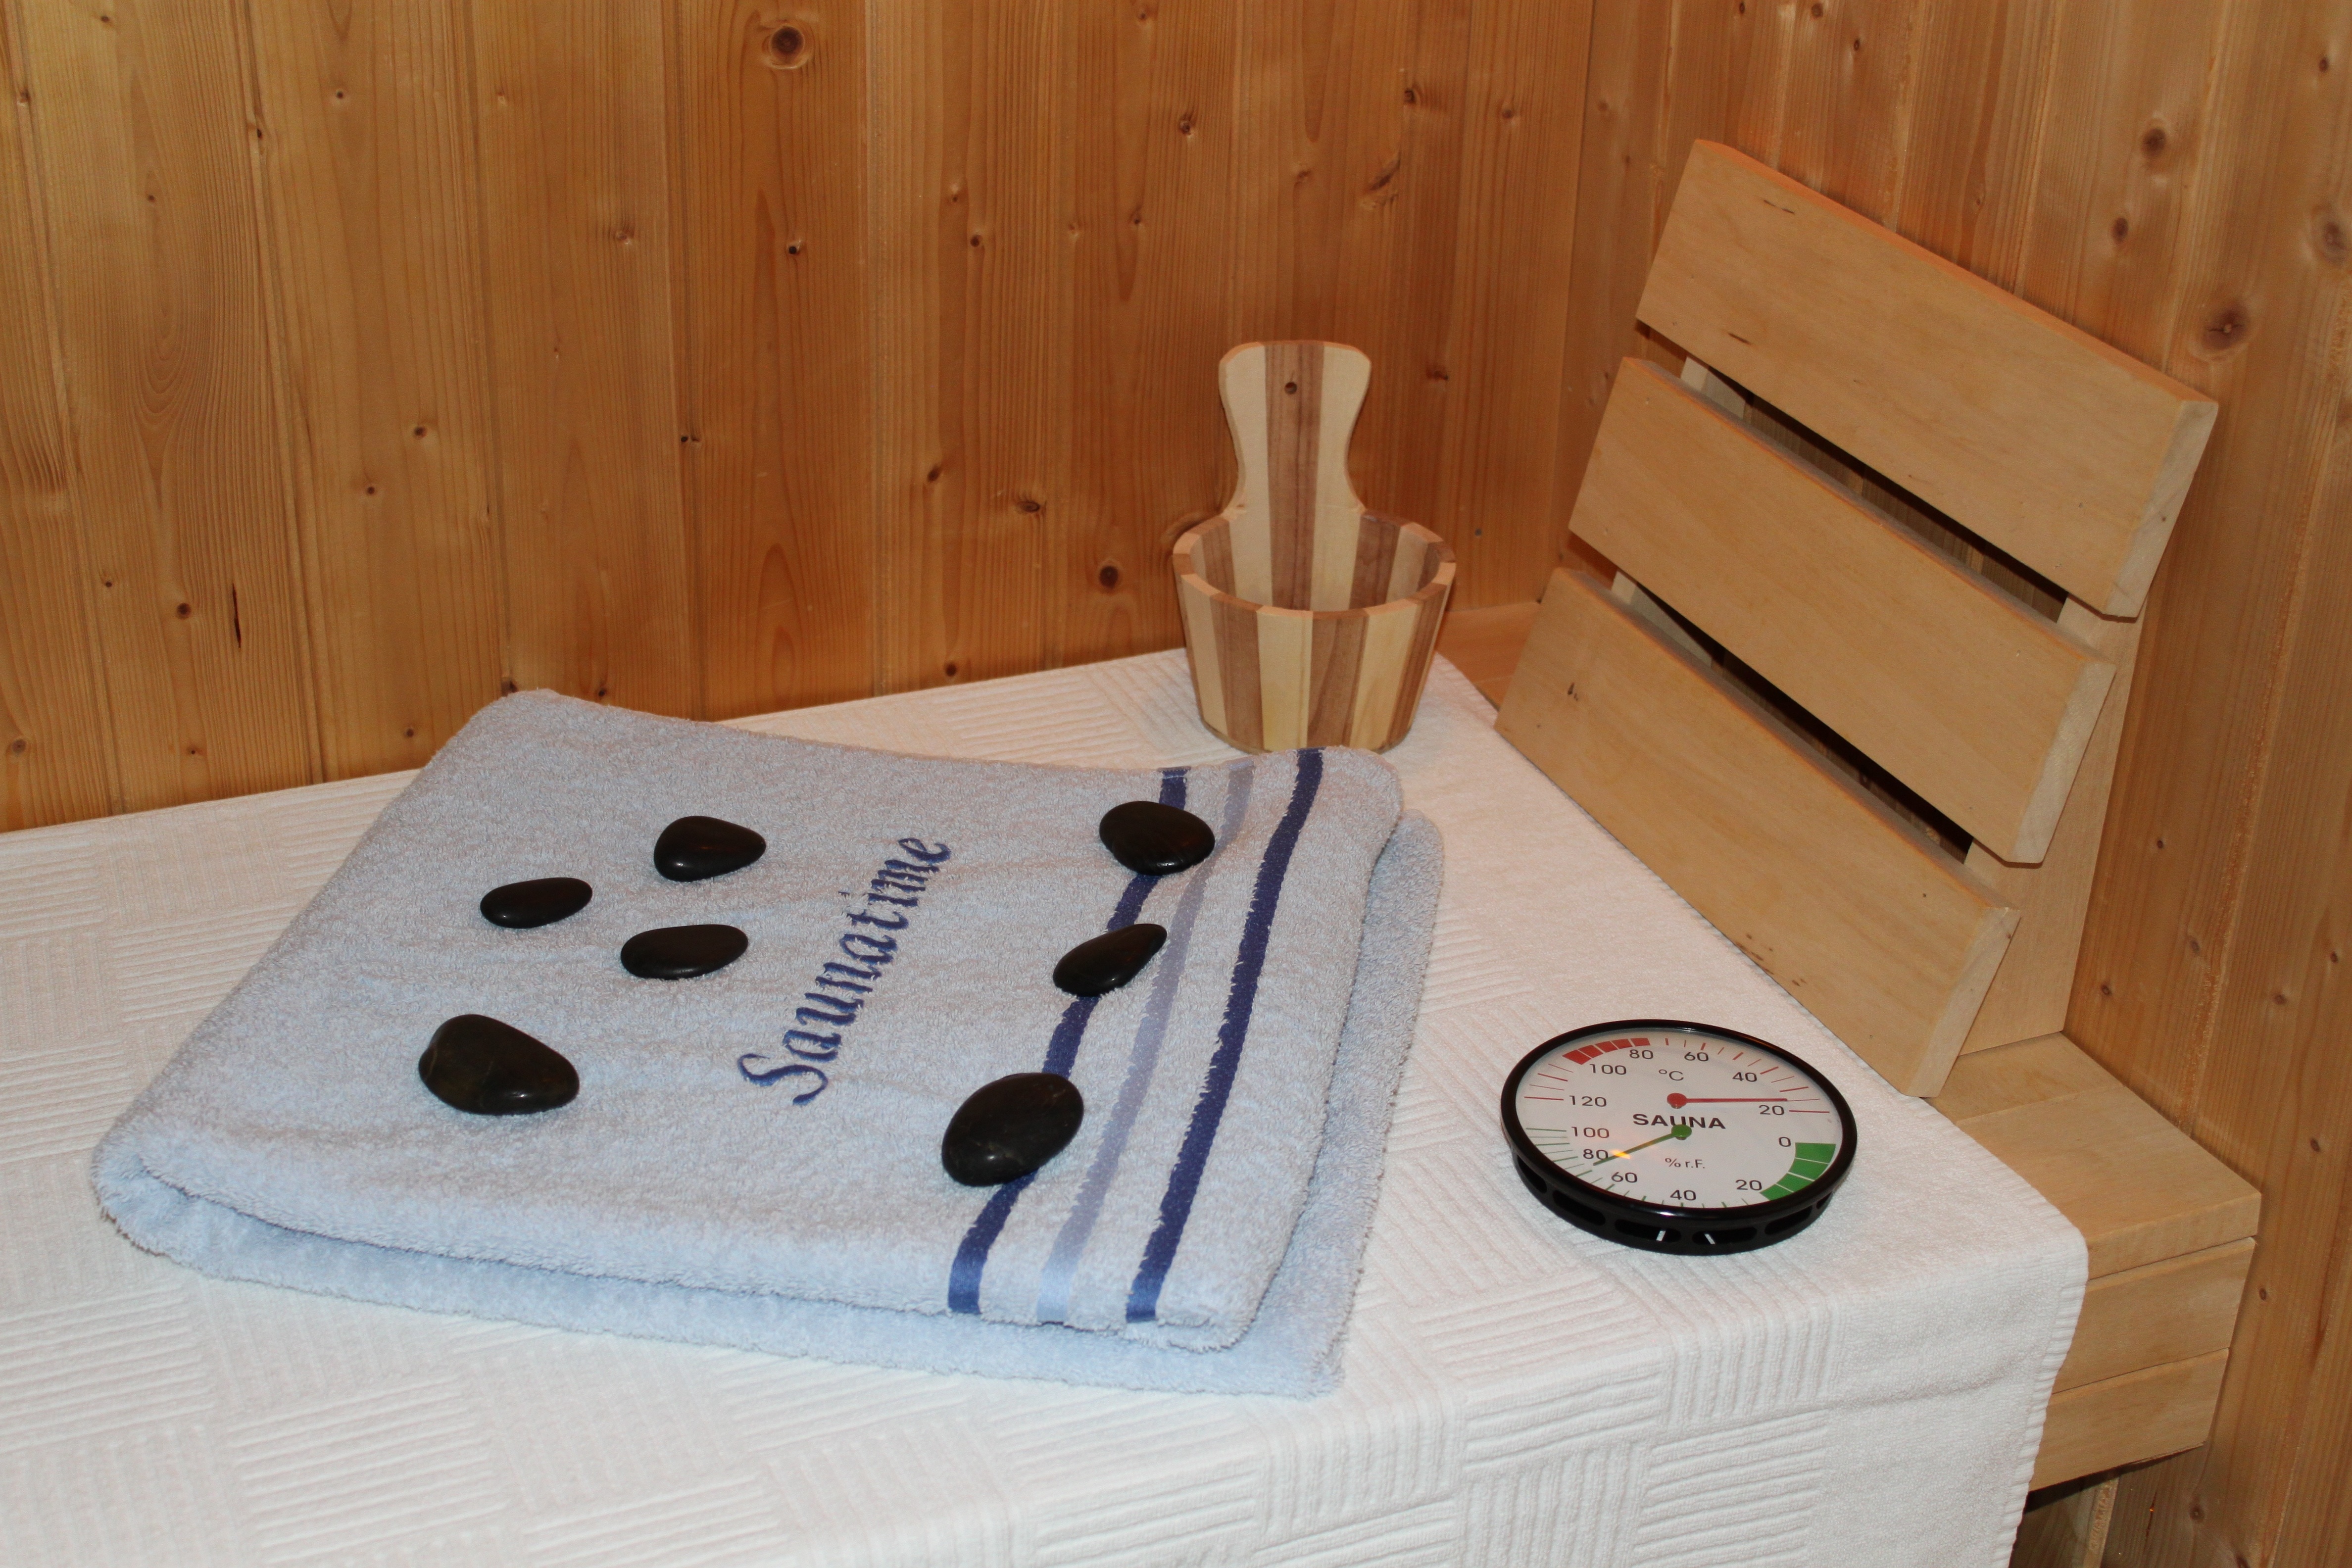 black pebbles stones gauge meter and blue bathroom towel